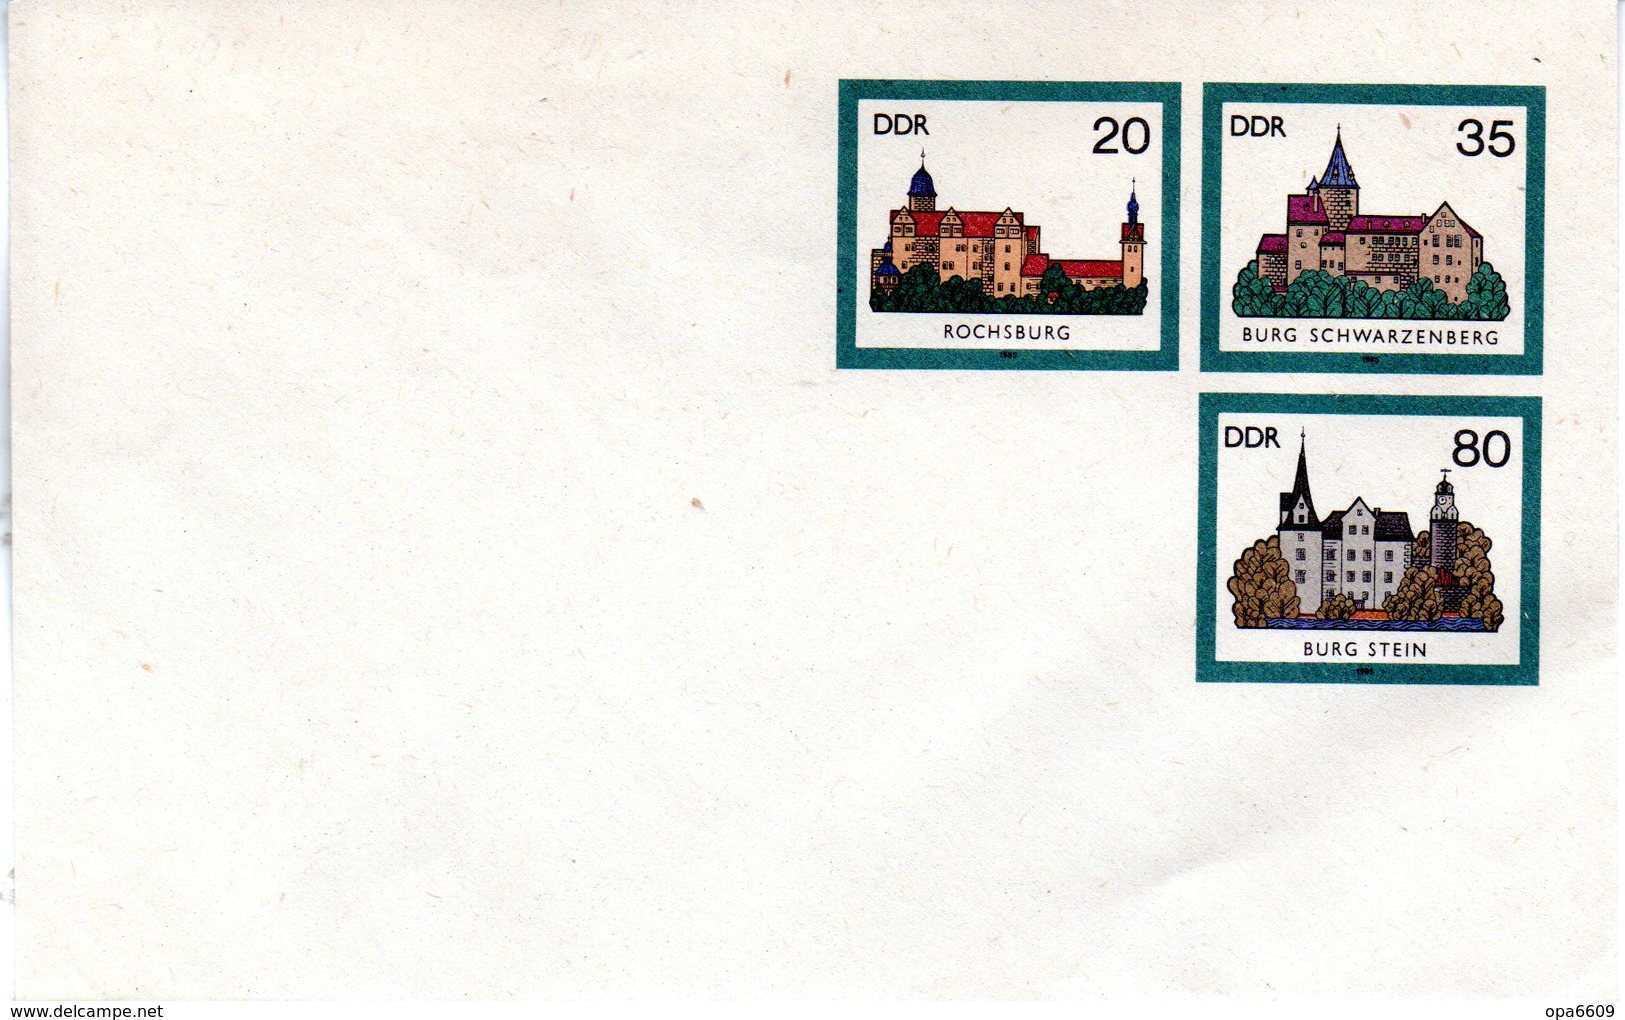 DDR Amtl. GZS-Umschlag U 2 20(Pf) Neben 35(Pf) Darunter 80(Pf) Mehrfarbig "Burgen Der DDR" Ungebraucht - Covers - Mint